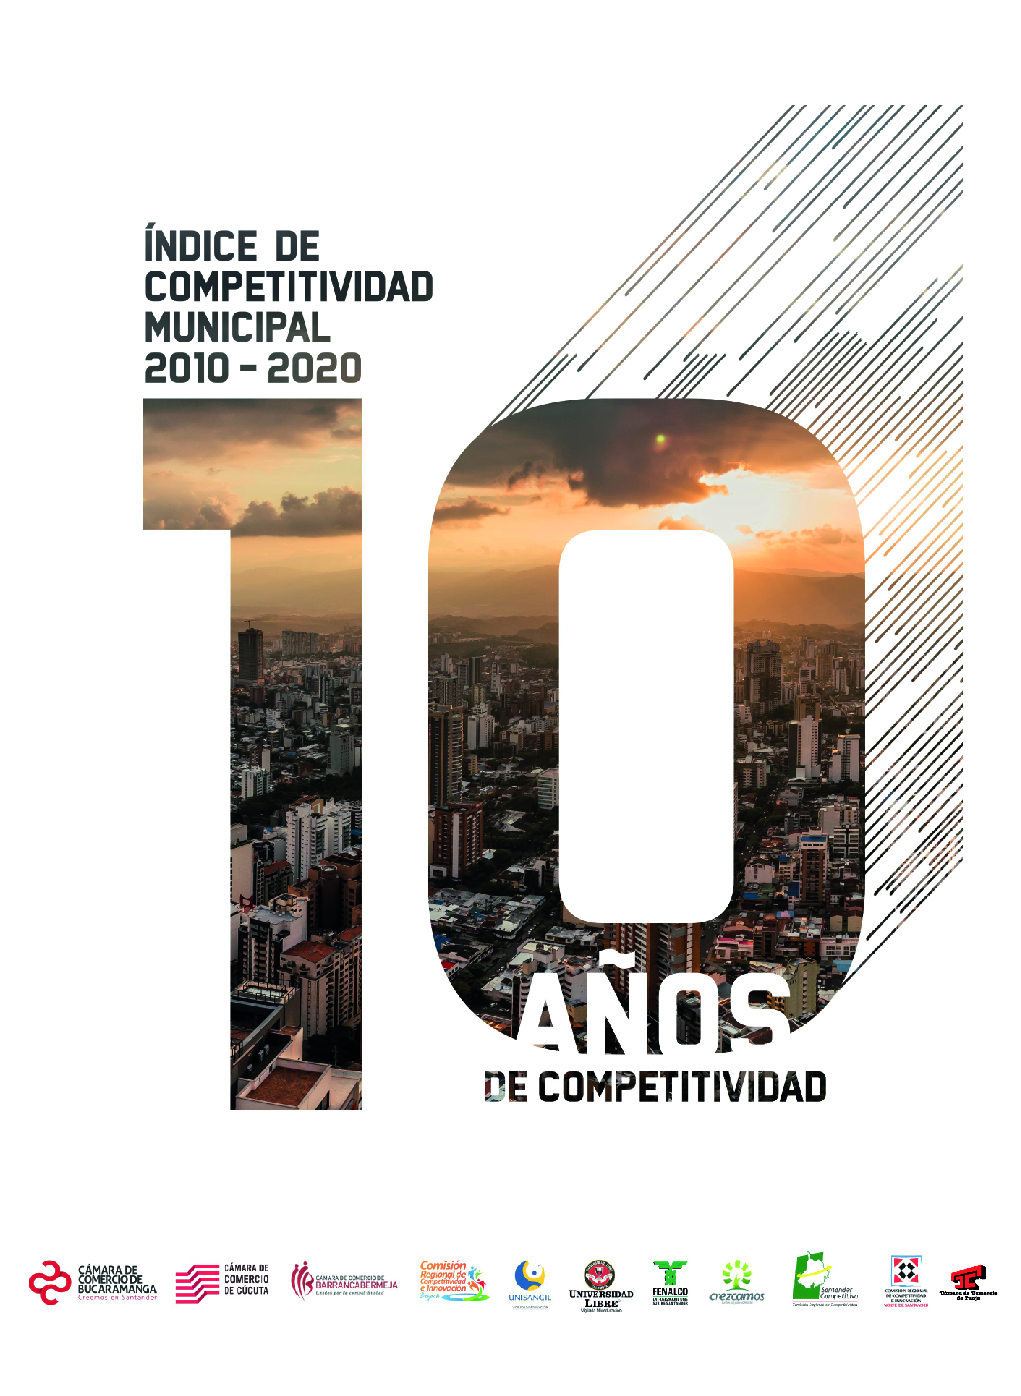 Índice de Competitividad Municipal (ICM) 2020